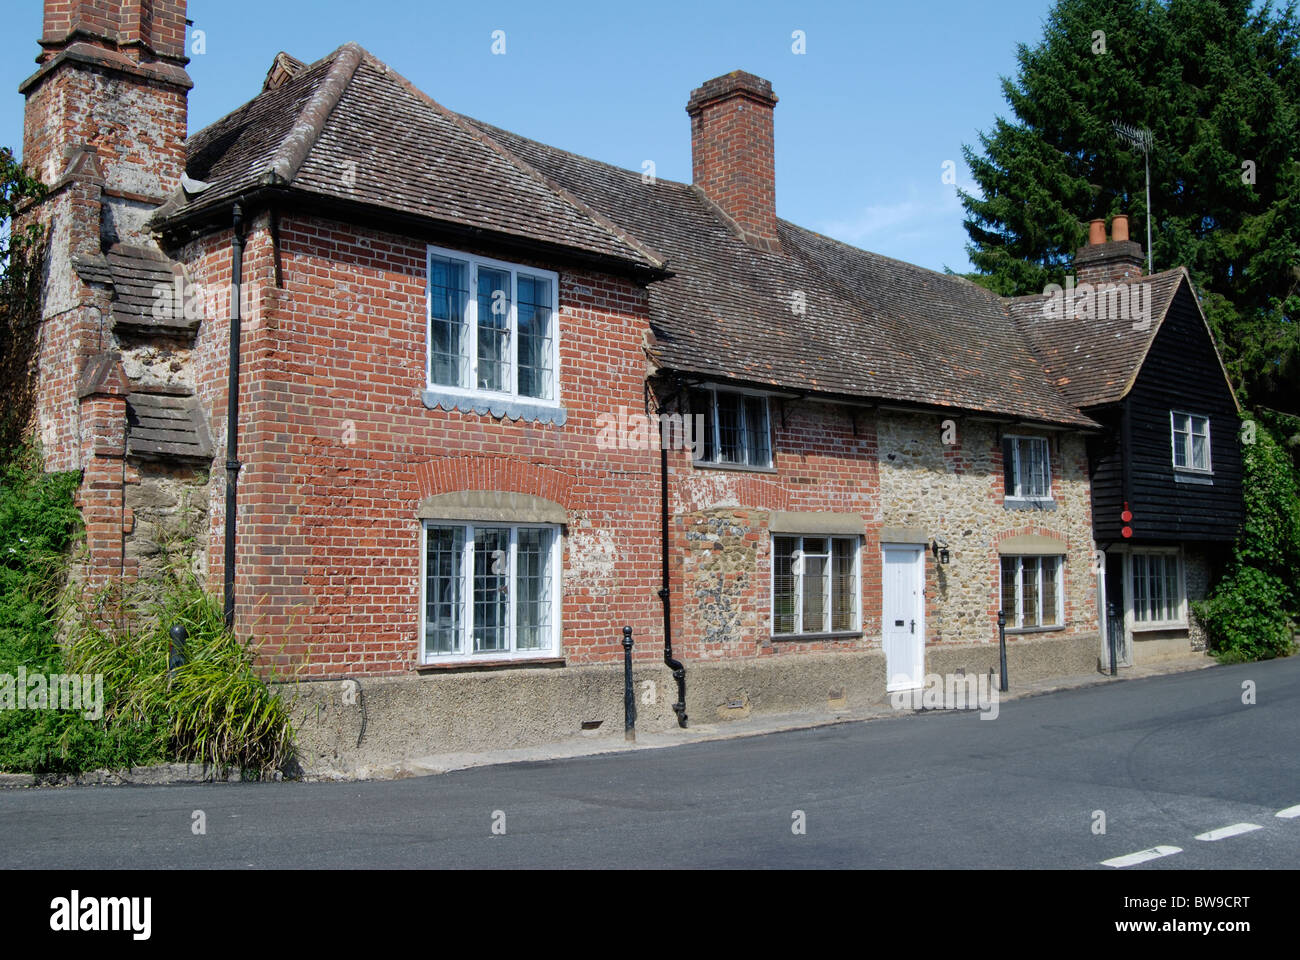 Ancien et pittoresque cottage en brique à Shere. Près de Dorking. Surrey. L'Angleterre Banque D'Images